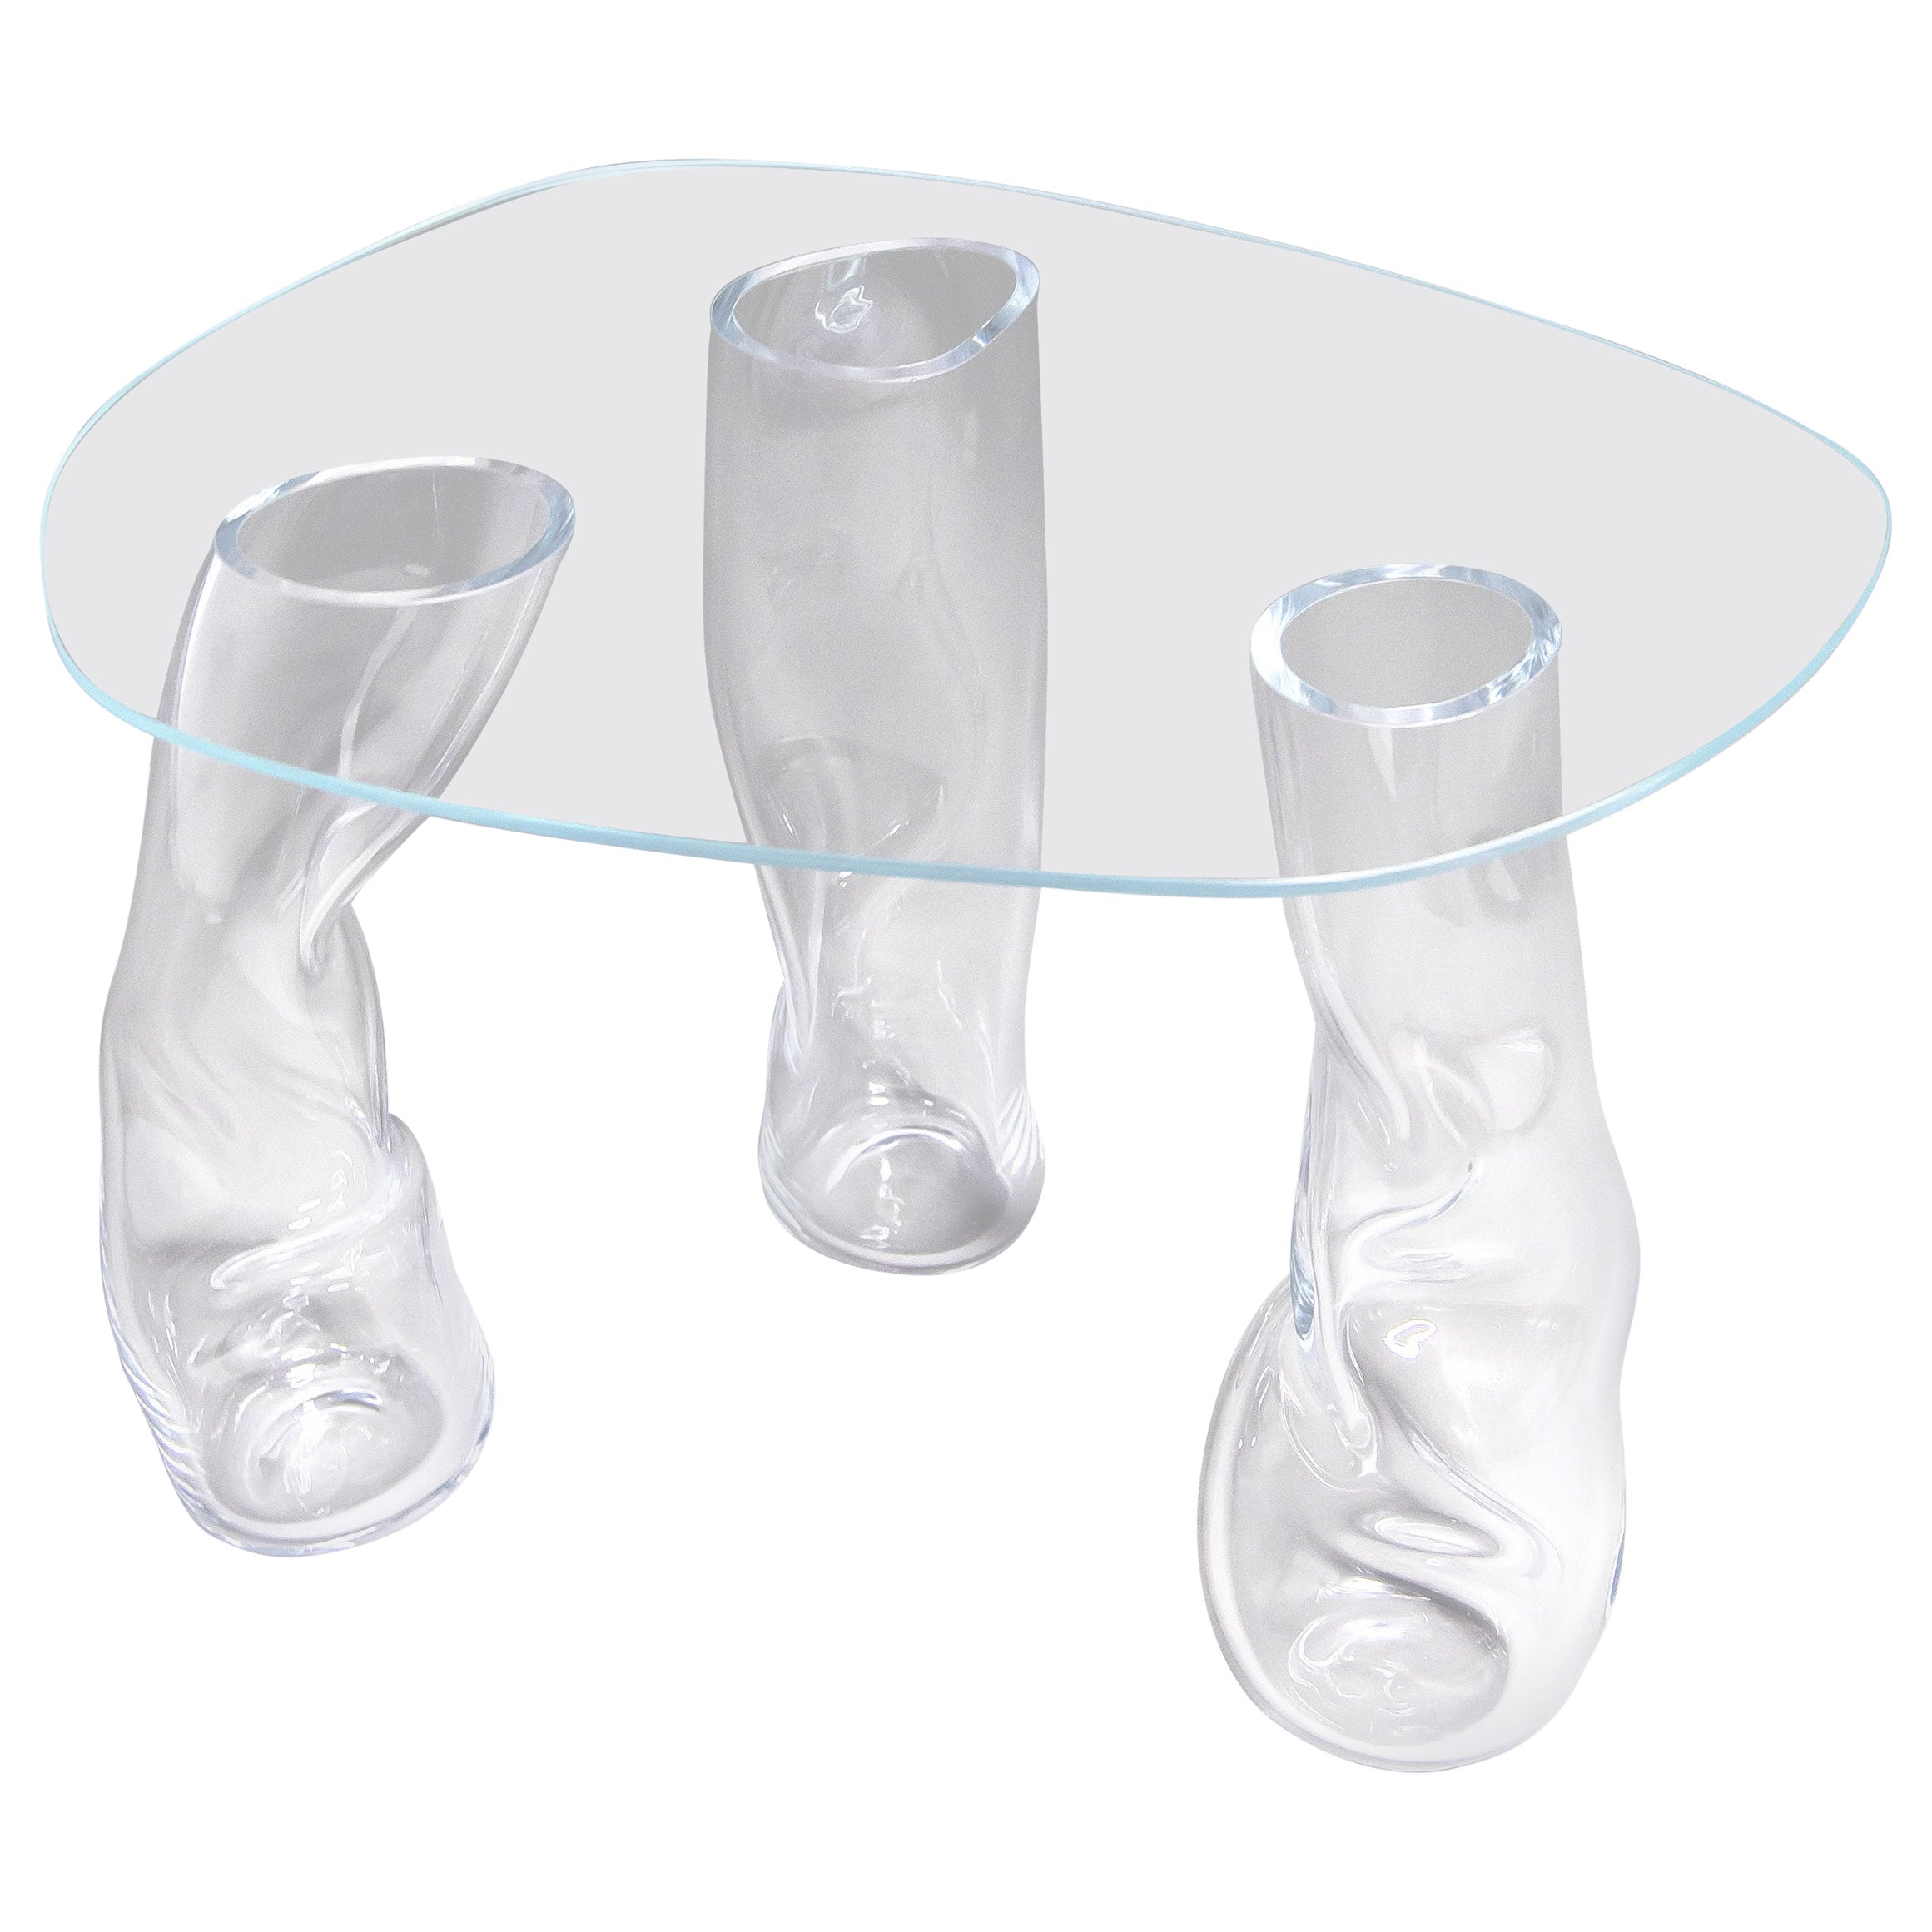 Glass table by Clara Jorisch For Sale